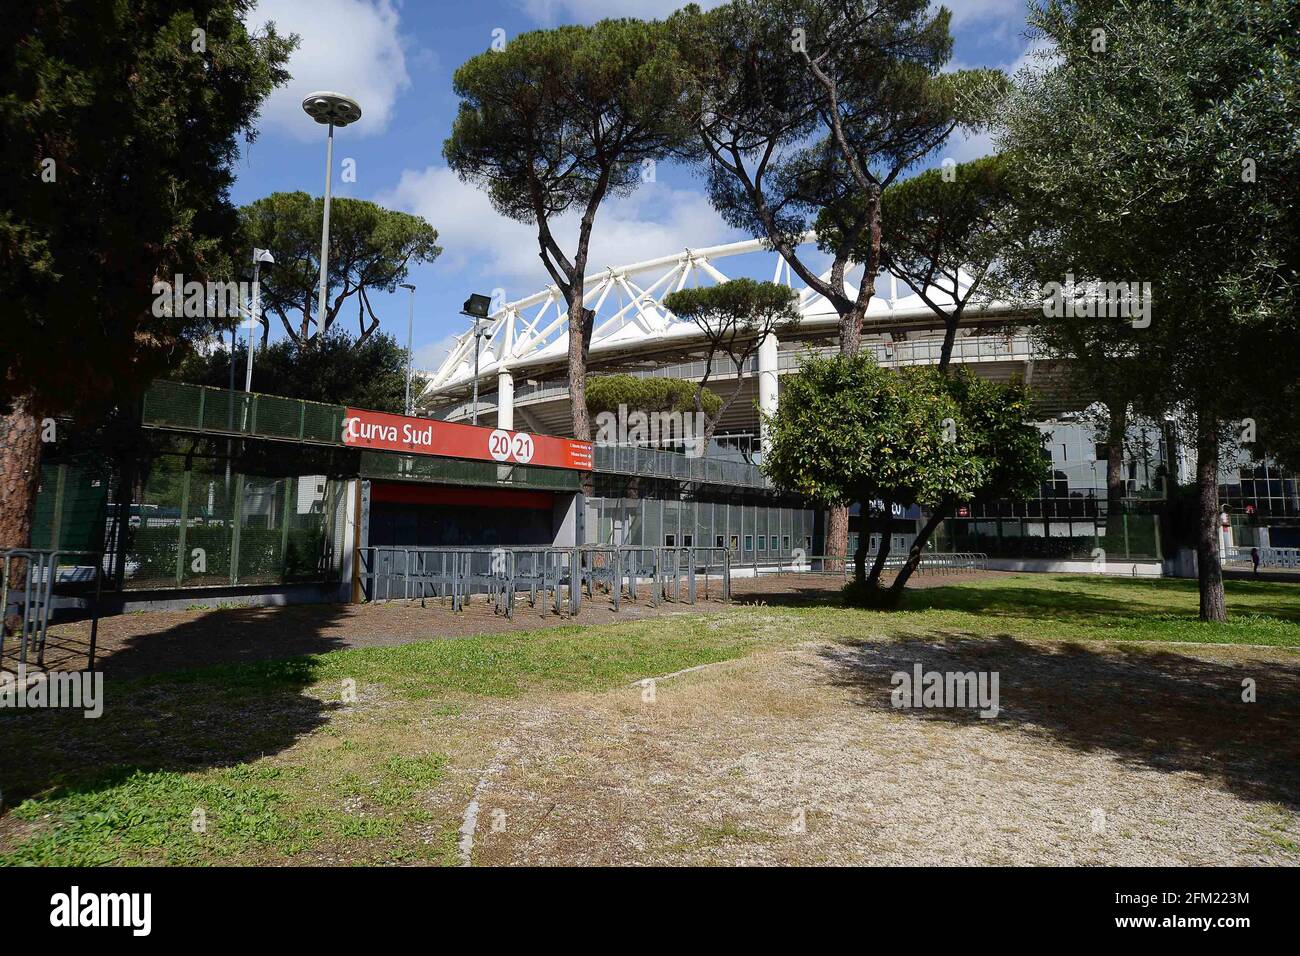 Foto IPP/Roberto Ramaccia Roma 5/05/2021 Stadio Olimpico pre Euro 2020-2021 Nella foto l'ingresso della curva sud con lo stadio olimpico sullo sfondo Foto Stock